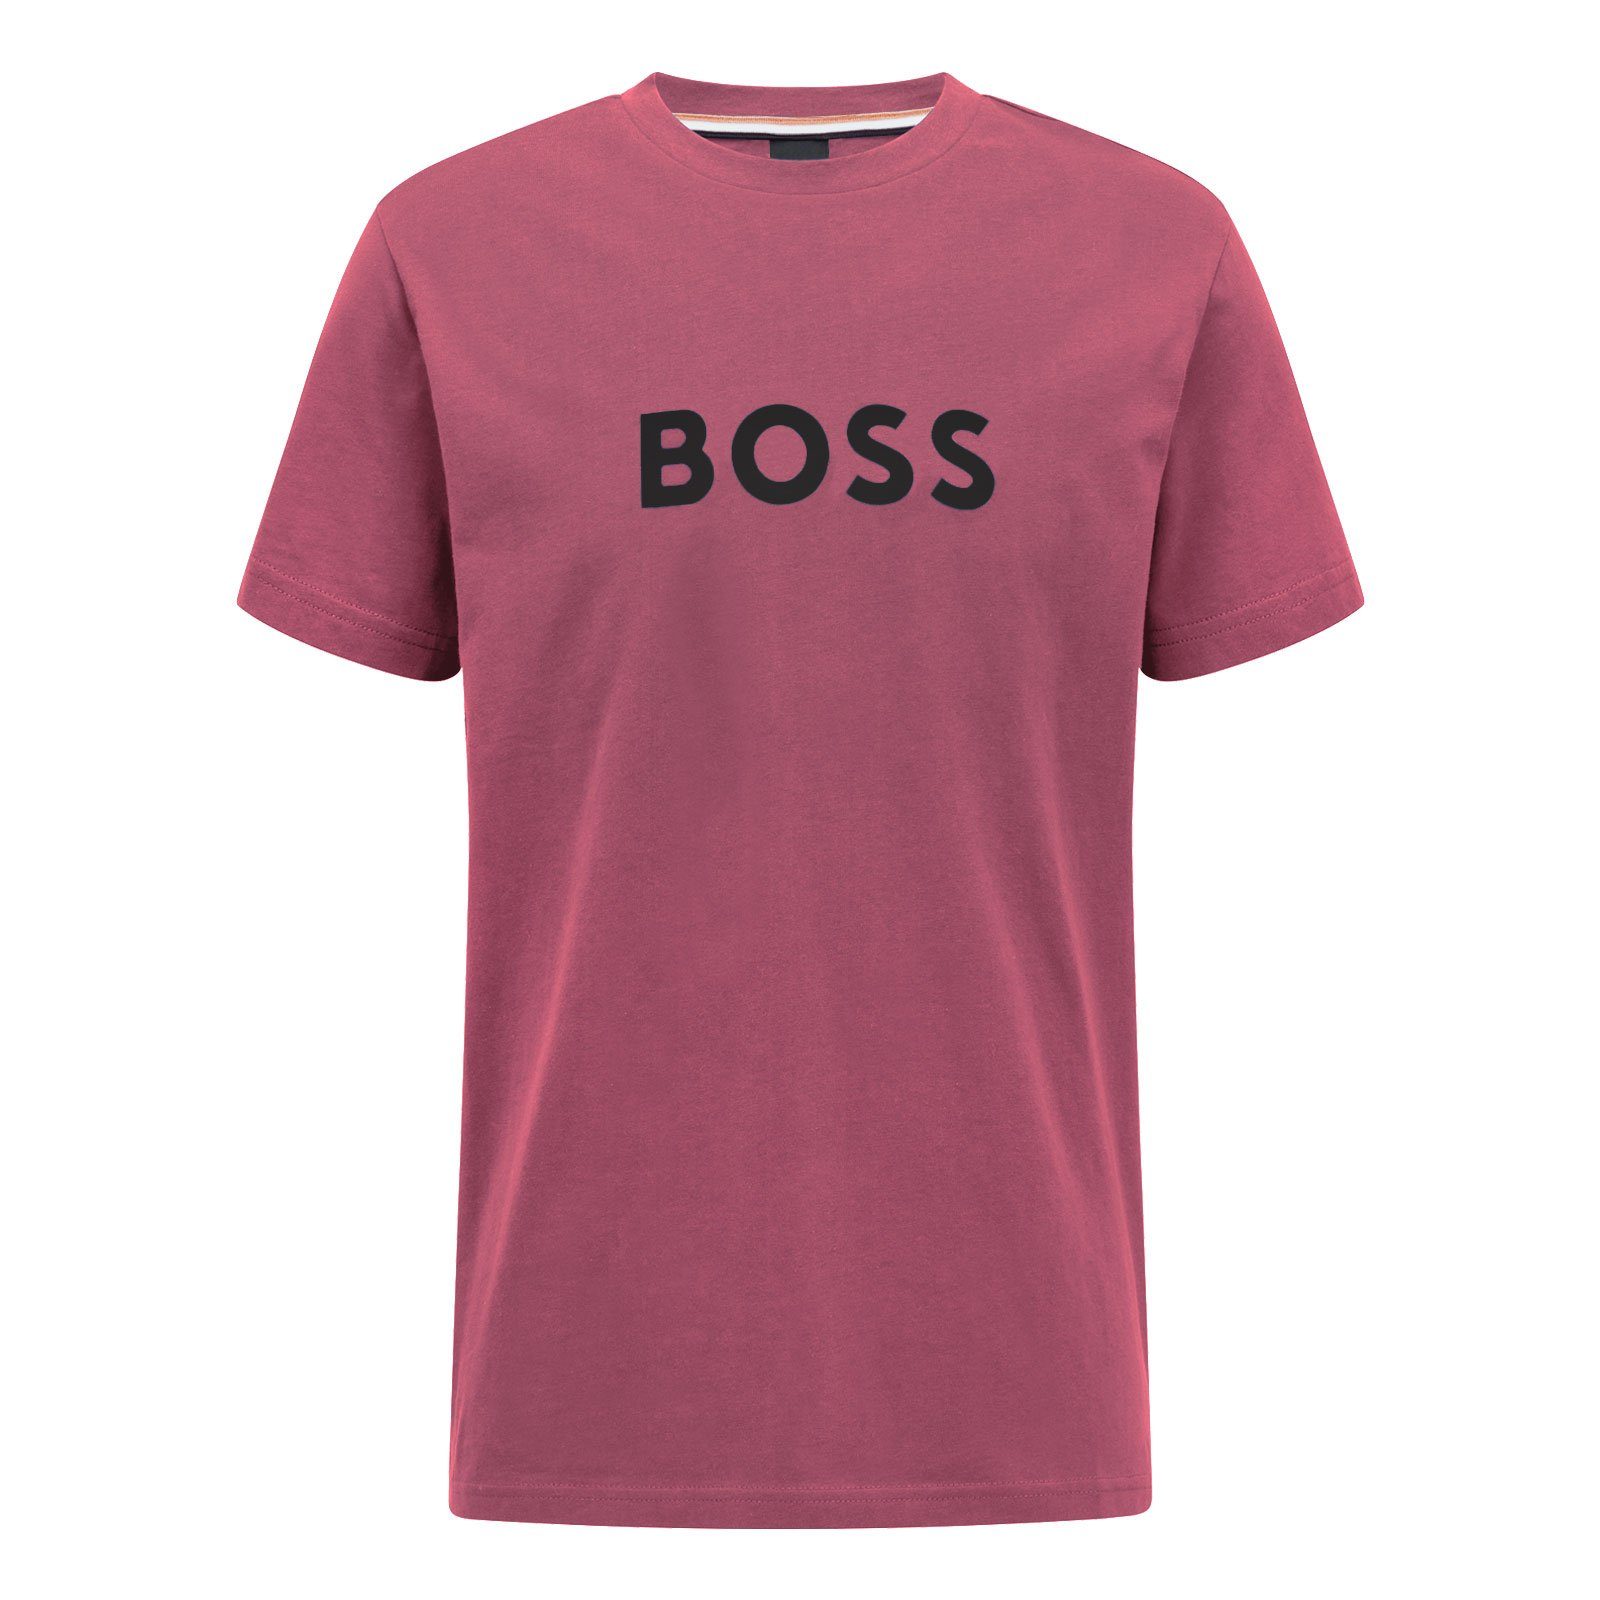 BOSS T-Shirt RN Sun Protection mit großem Markenprint auf der Brust 697 dark pink